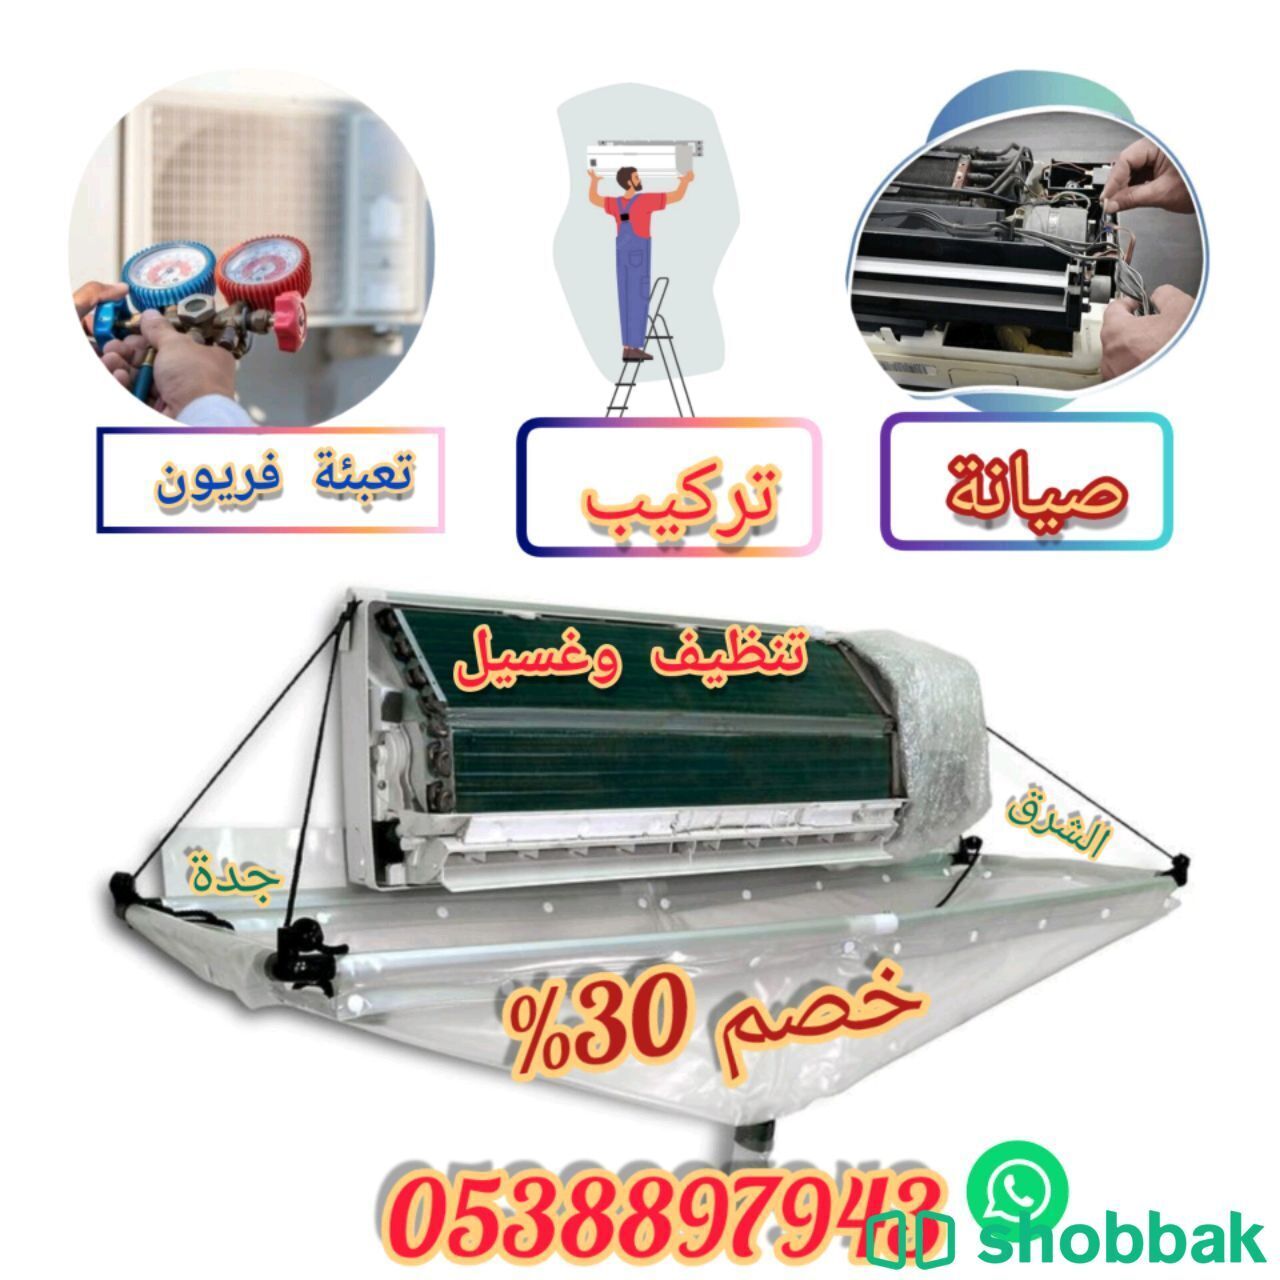 تنظيف مكيفات سبليت وشباك  Shobbak Saudi Arabia